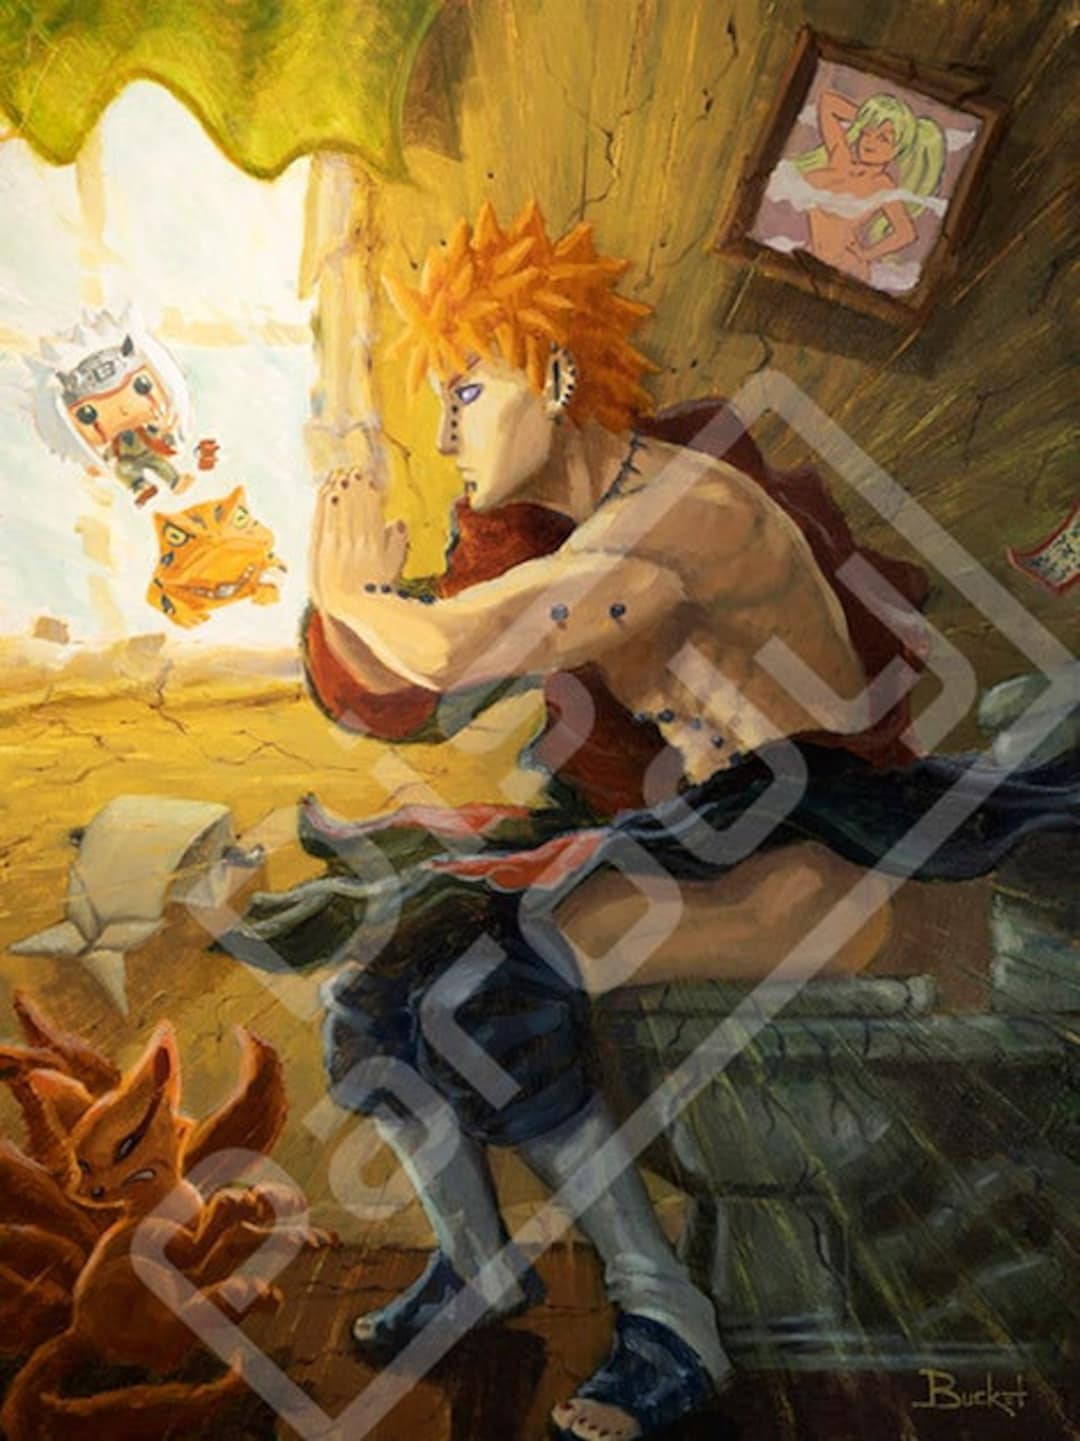 Naruto as Jonin fanart : r/Naruto